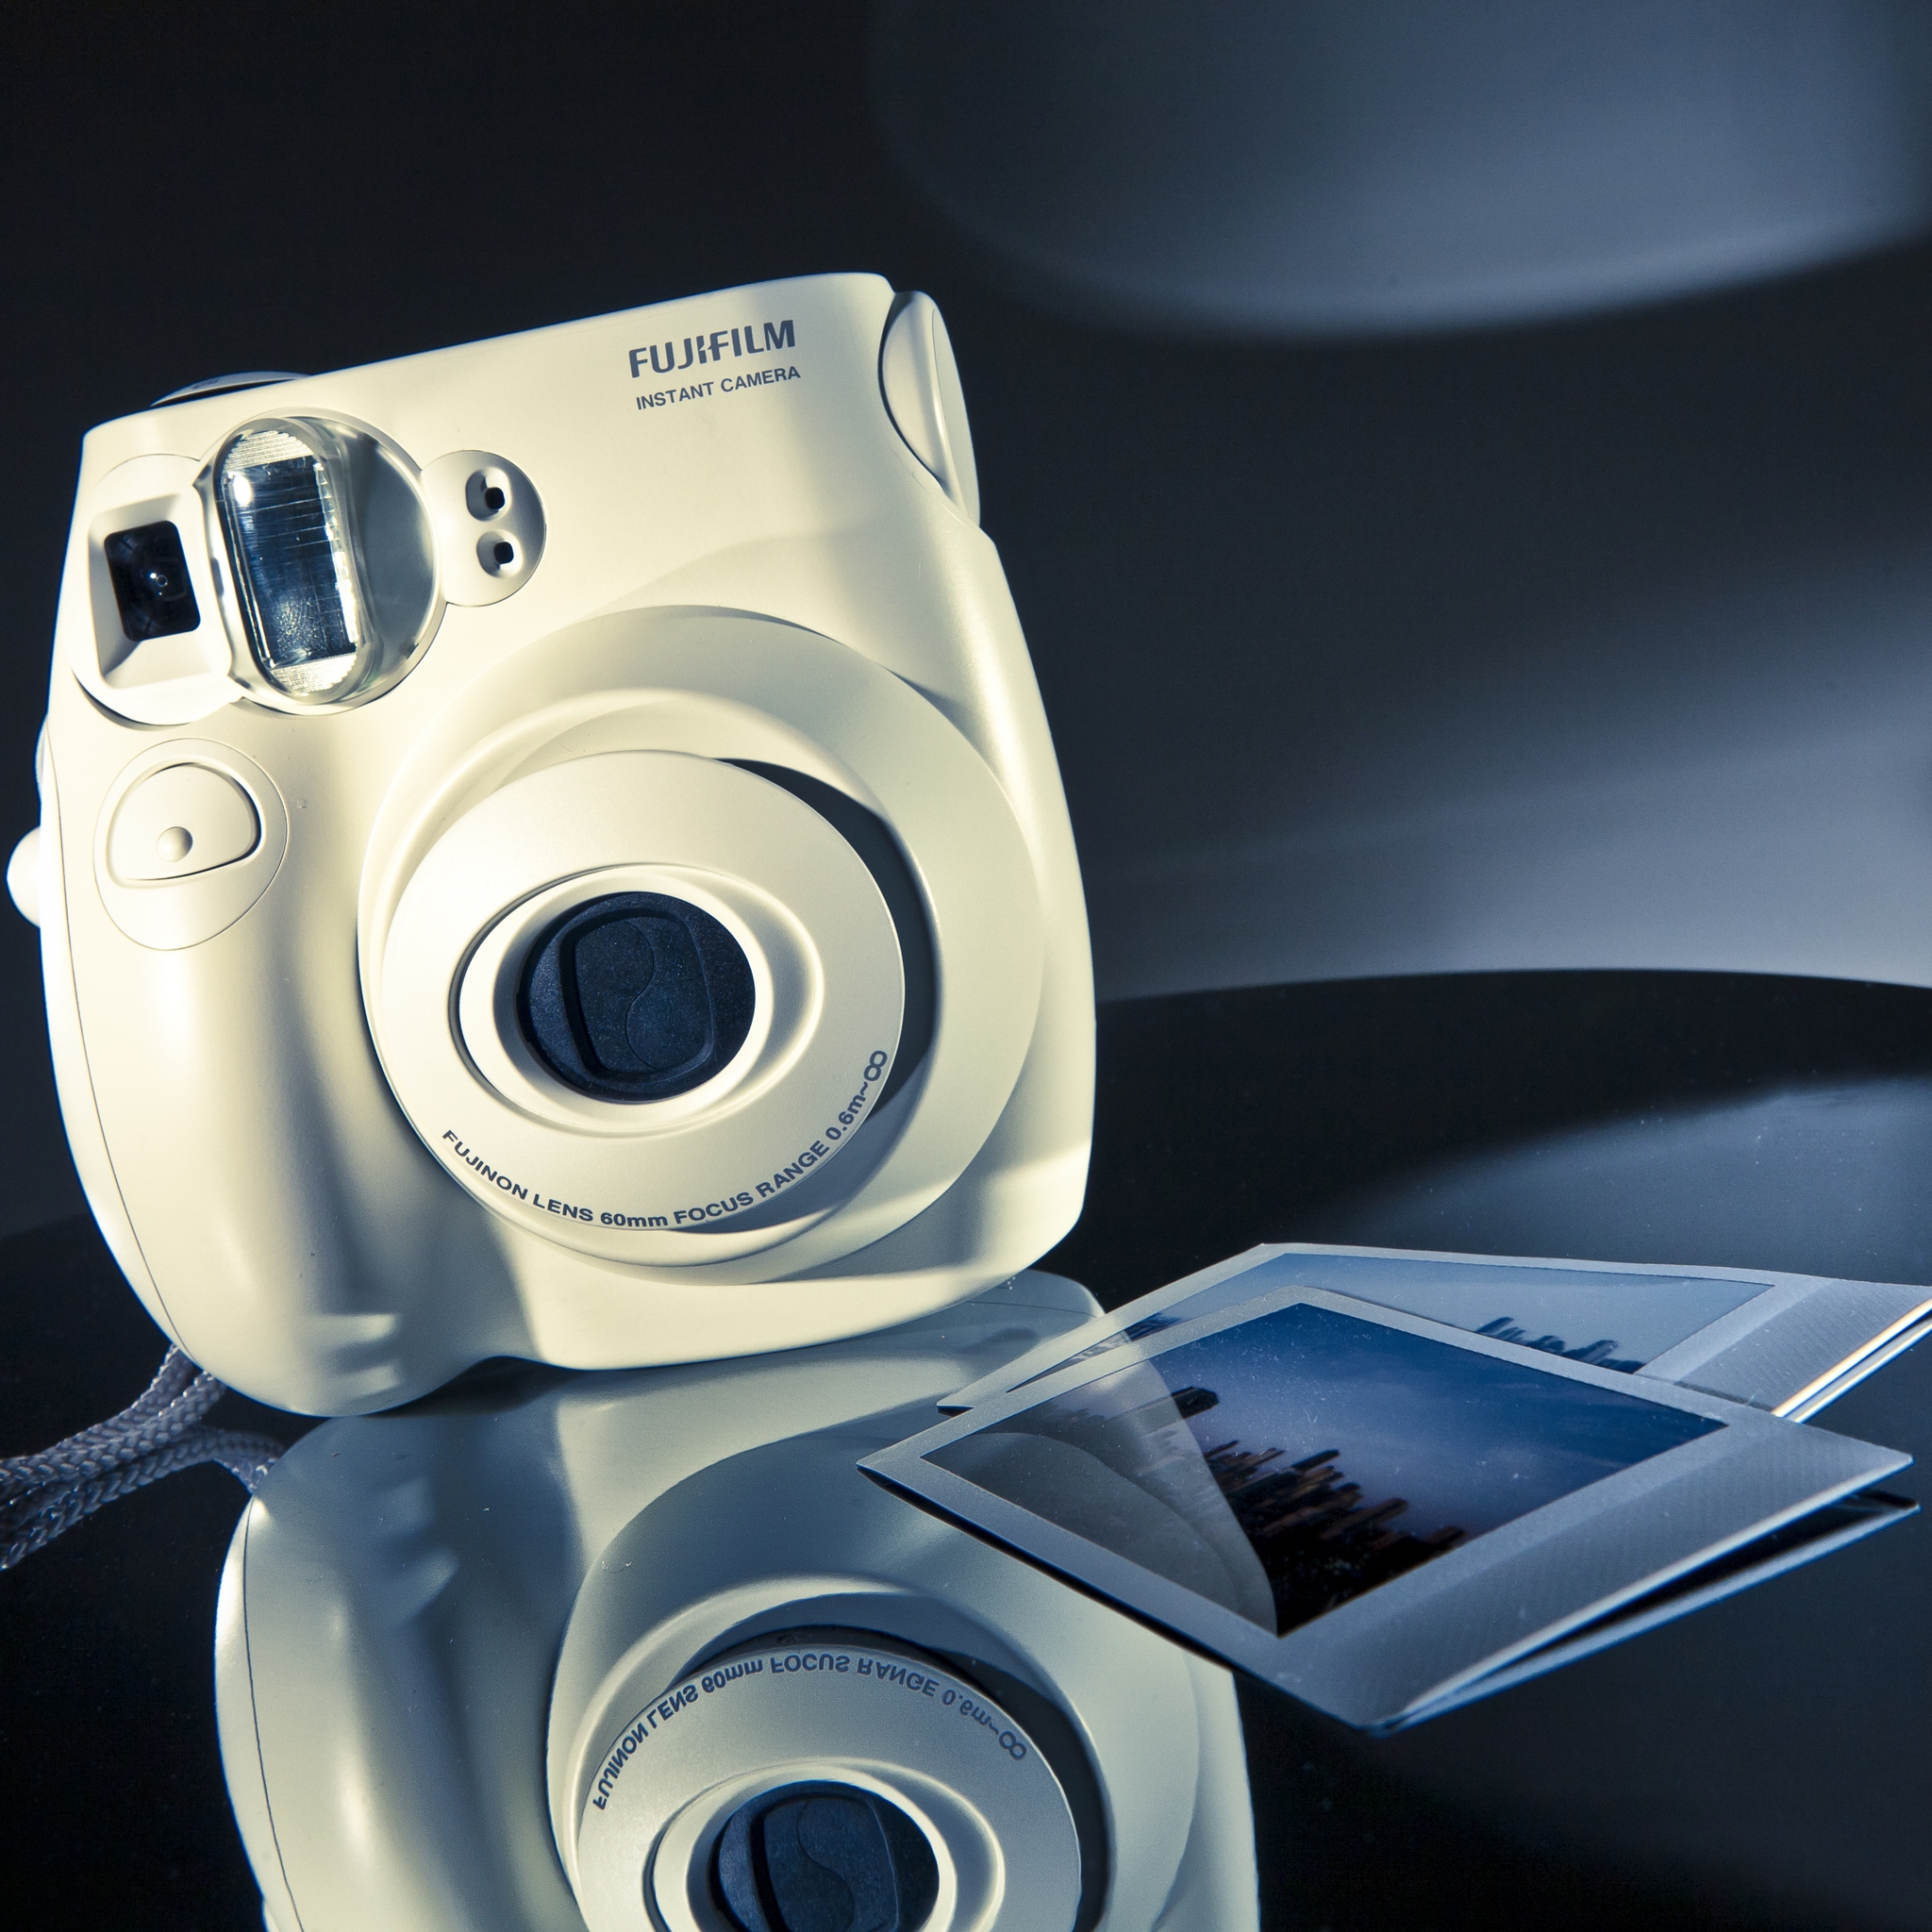 Fujifilm Instax Mini Camera for 2048 x 2048 New iPad resolution